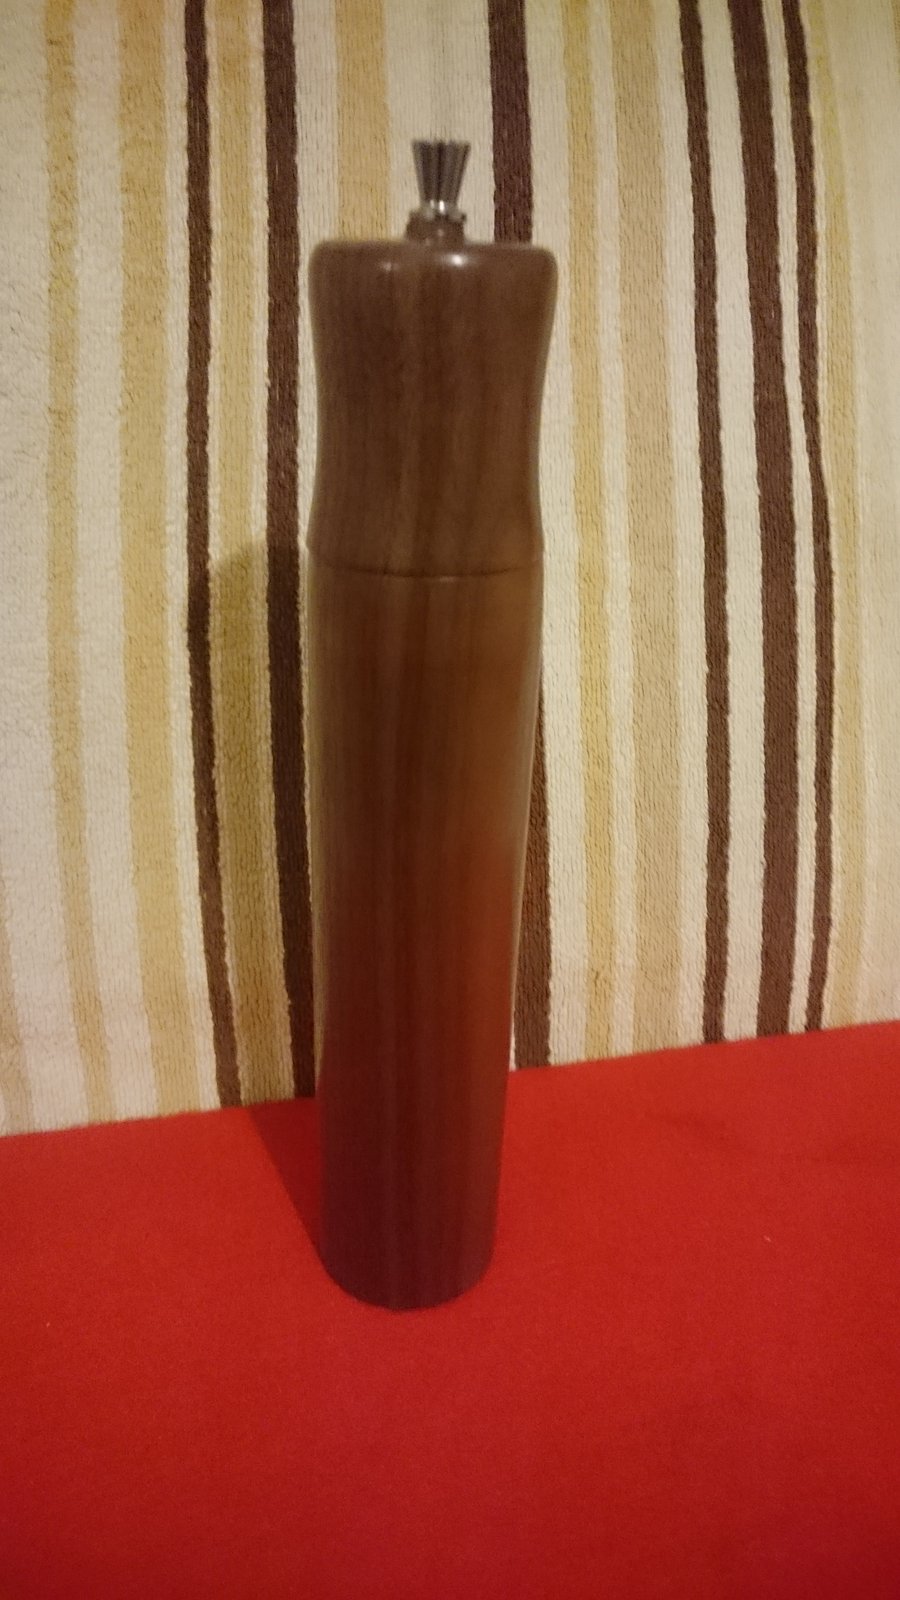 Pepper Grinder (21) Handmade Wooden 255mm  ( SOLD )